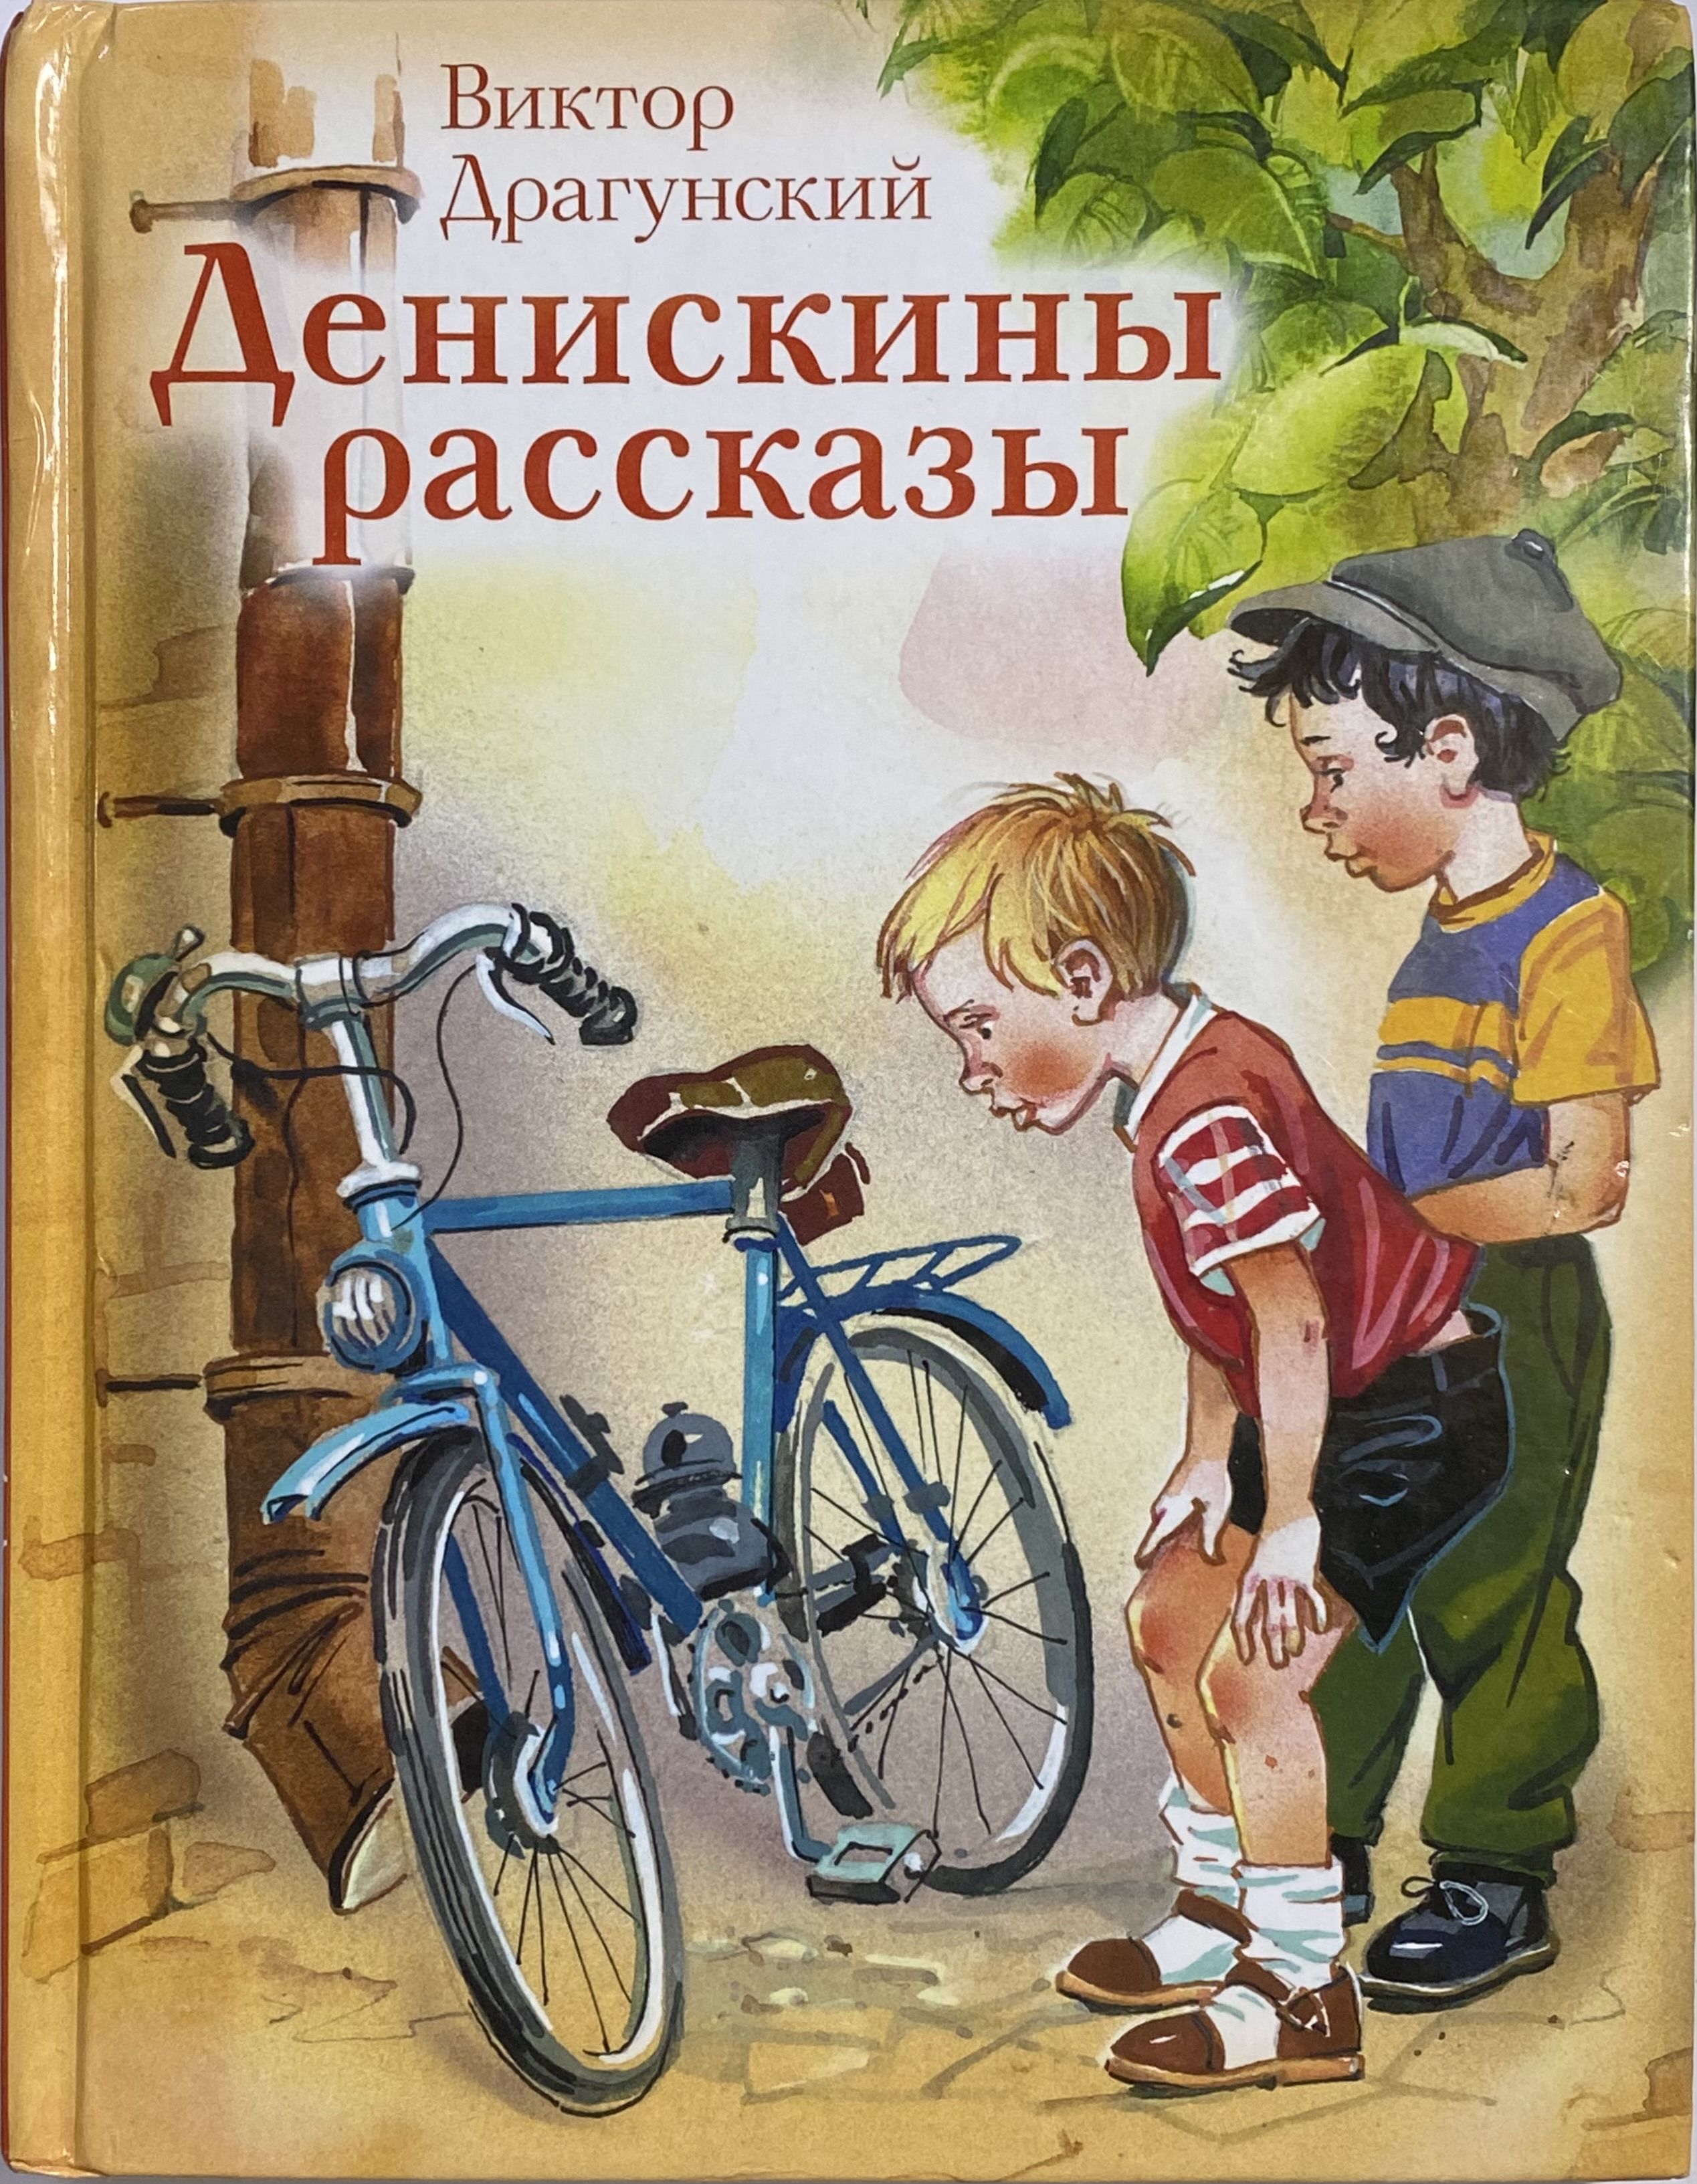 Драгунский книги для детей. Драгунский Денискины рассказы иллюстрации.